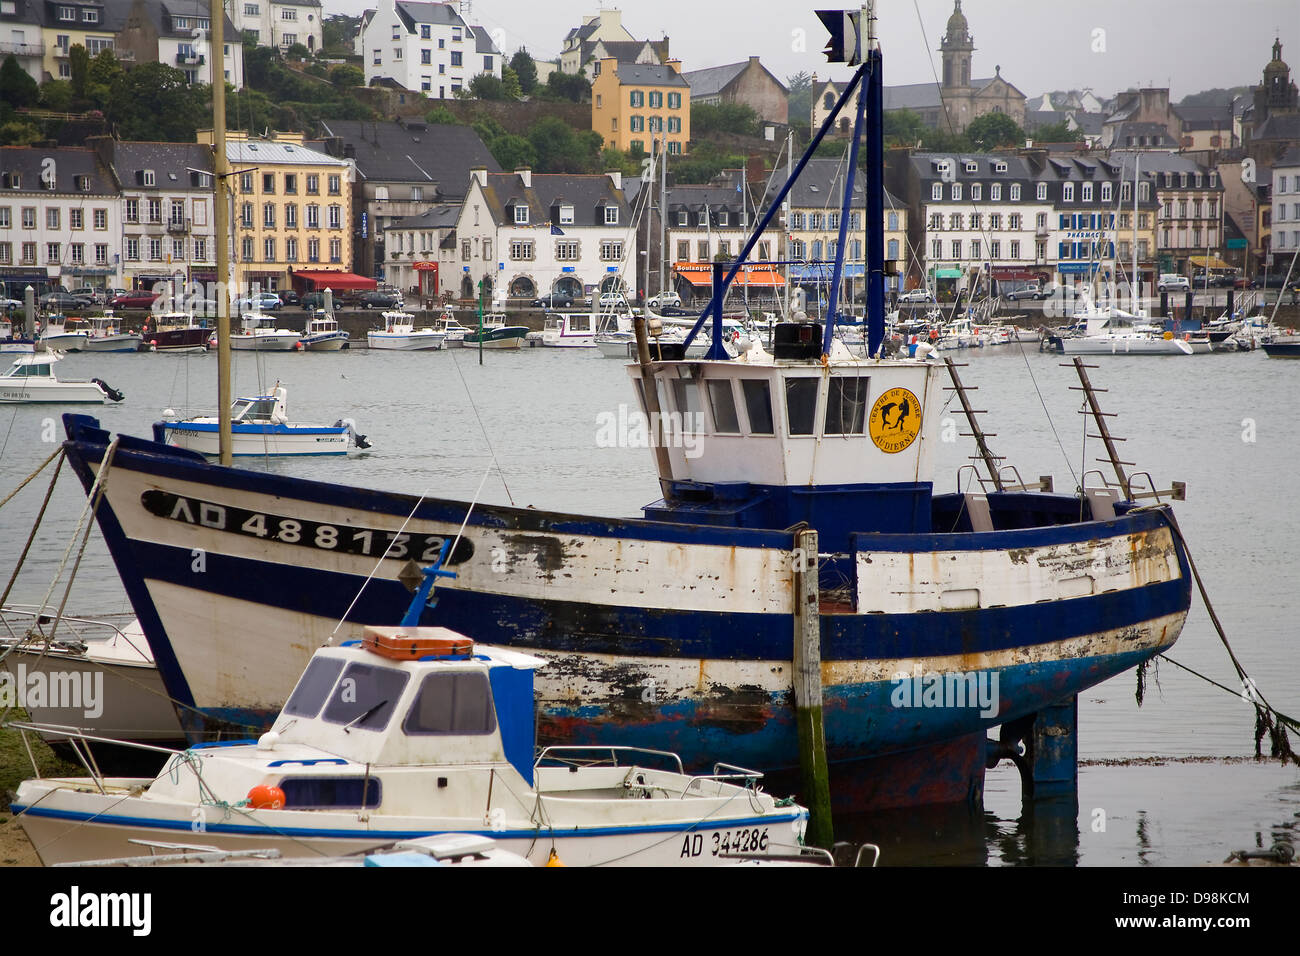 Bateau , Port et maisons. Audierne (Breton : Gwaien), Finistère, Bretagne, nord-ouest de la France, l'Europe. Banque D'Images